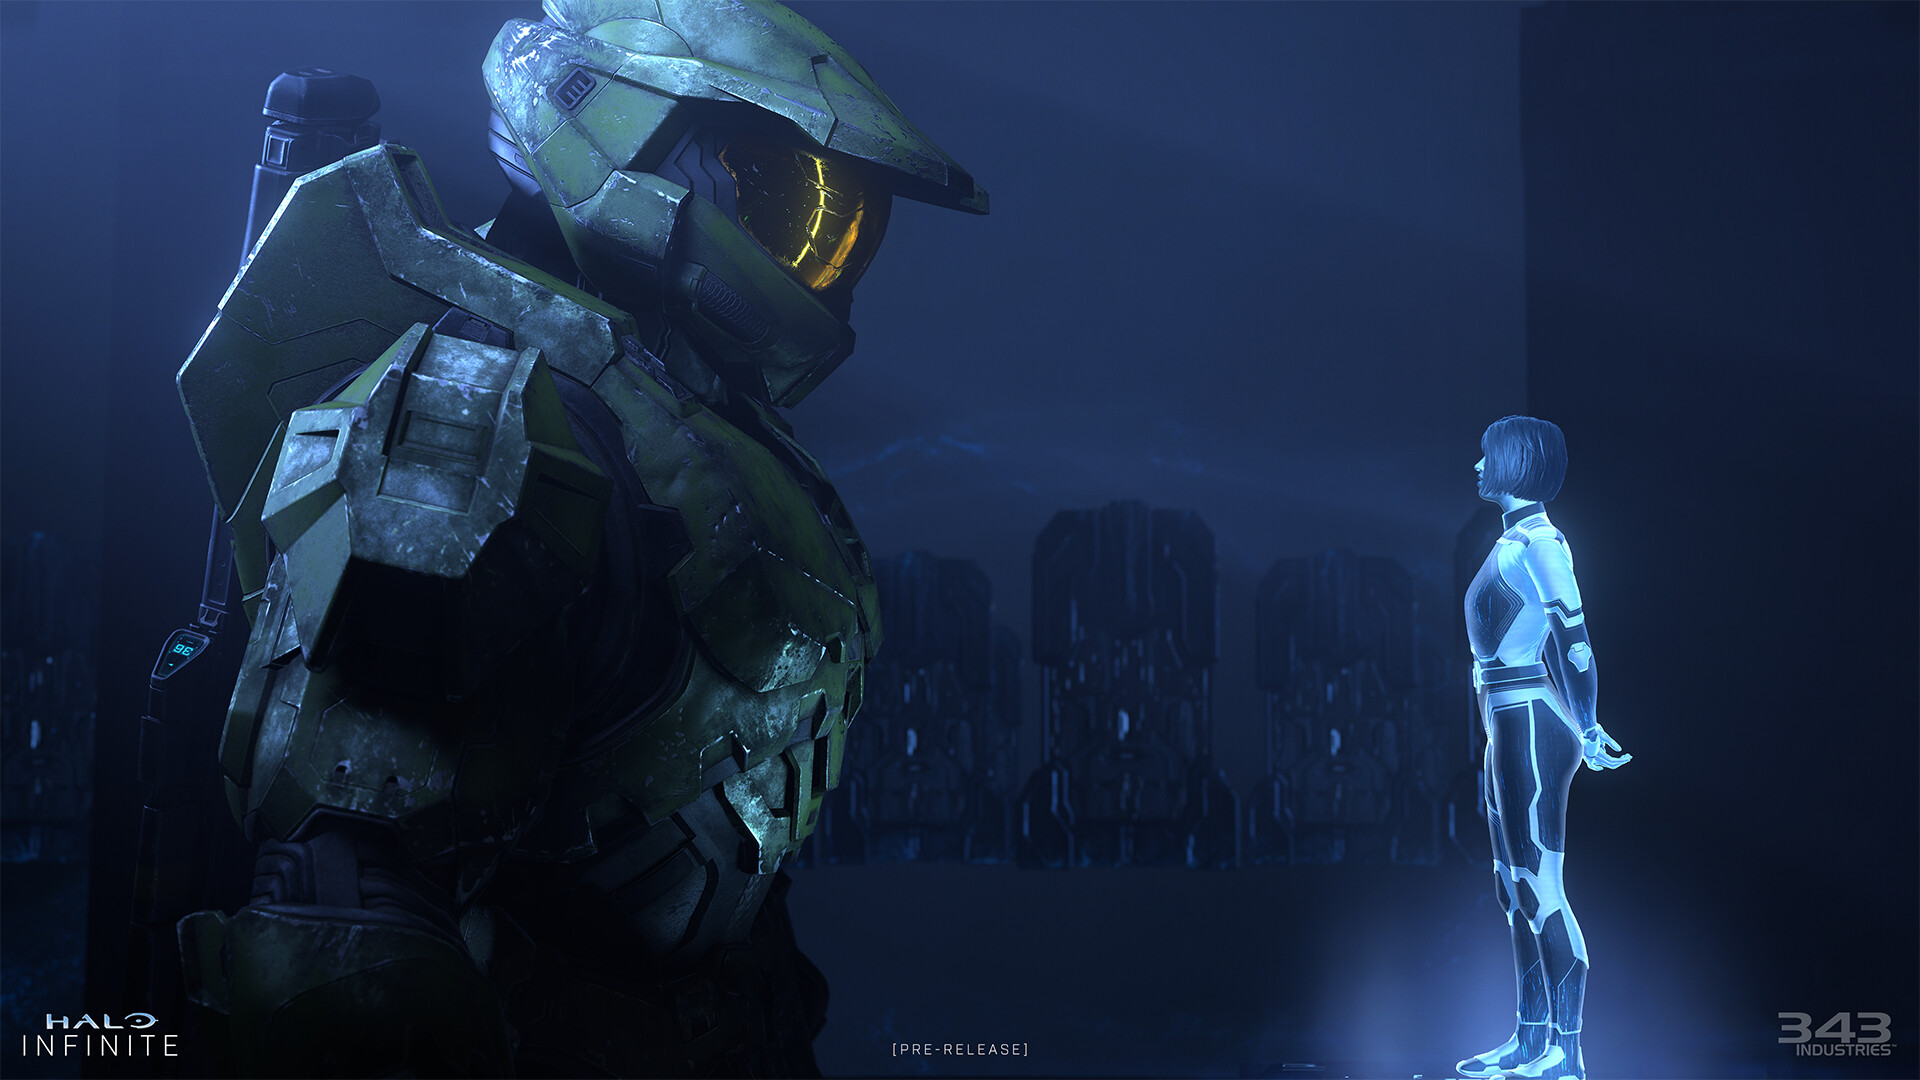 A partire dalla Stagione 3, le stagioni di Halo Infinite saranno "coerenti", assicura 343 Industries.